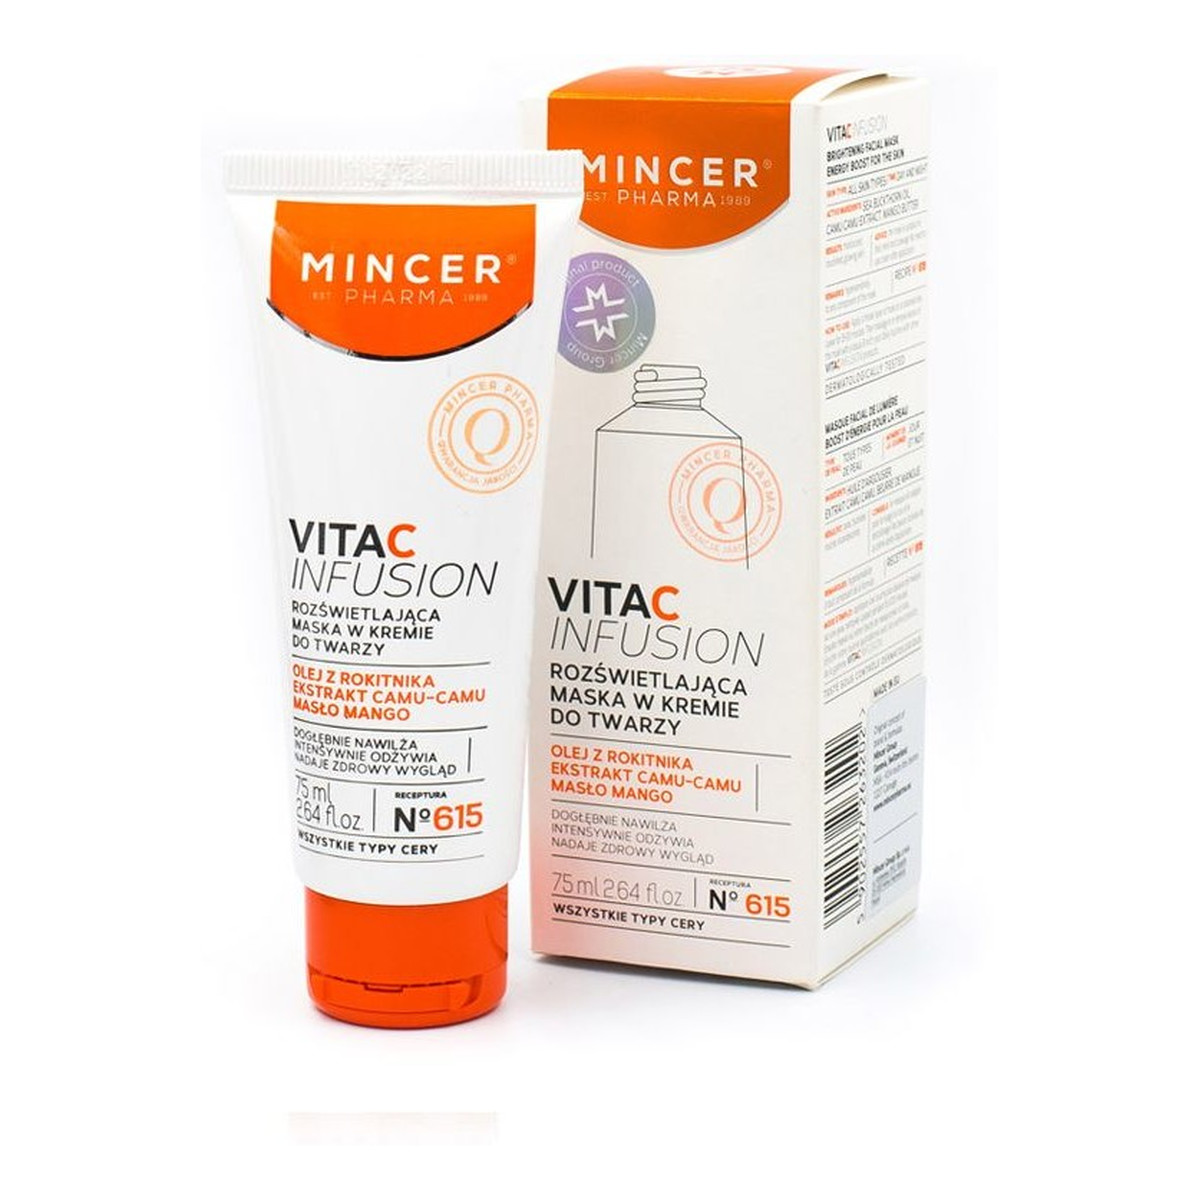 Mincer Pharma Vita C Infusion Rozświetlająca maska do twarzy w kremie 615 75ml